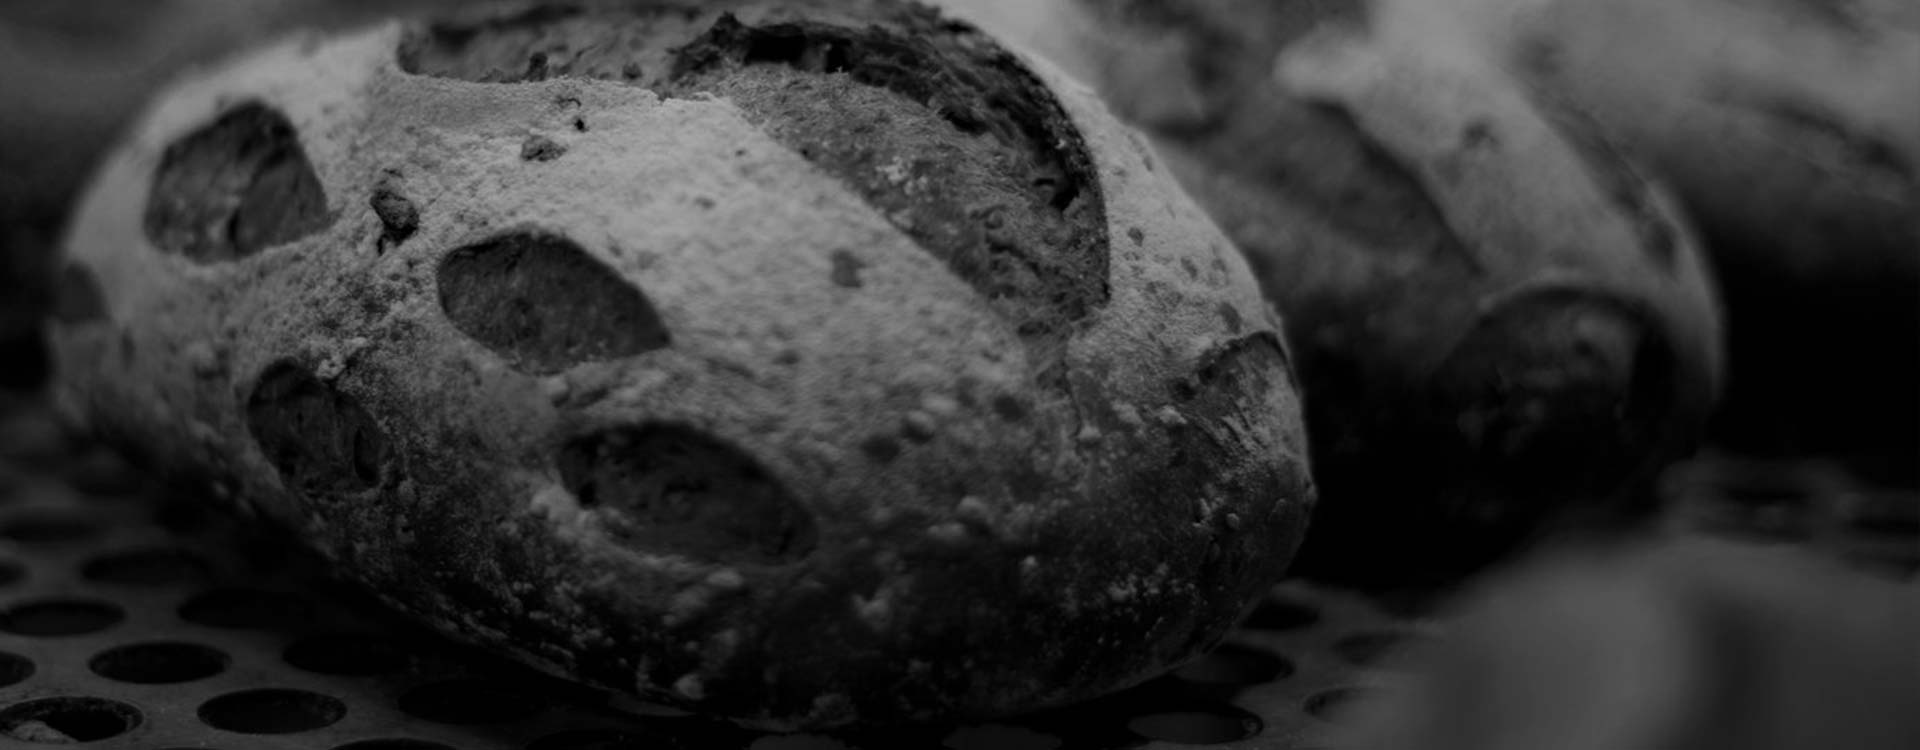 Fresh Bread - Friendly Loaf Bakery, Bury St Edmunds